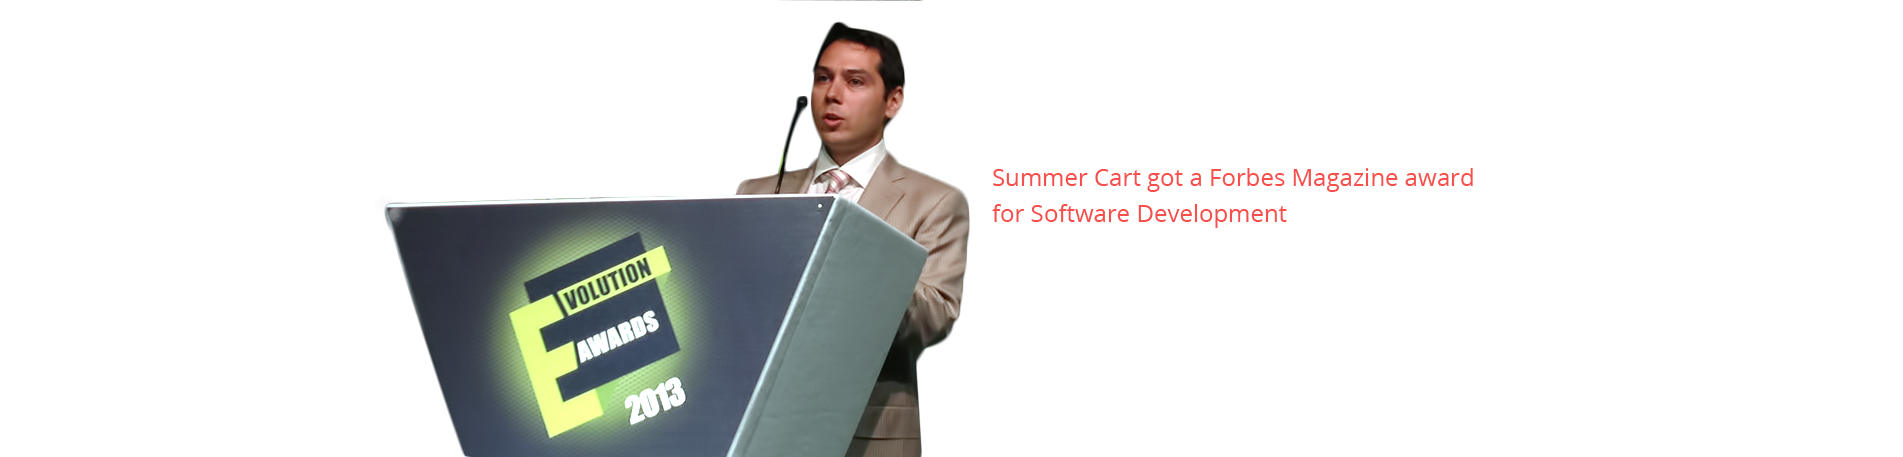 Summer Cart won a Forbes Magazine award for Software Development